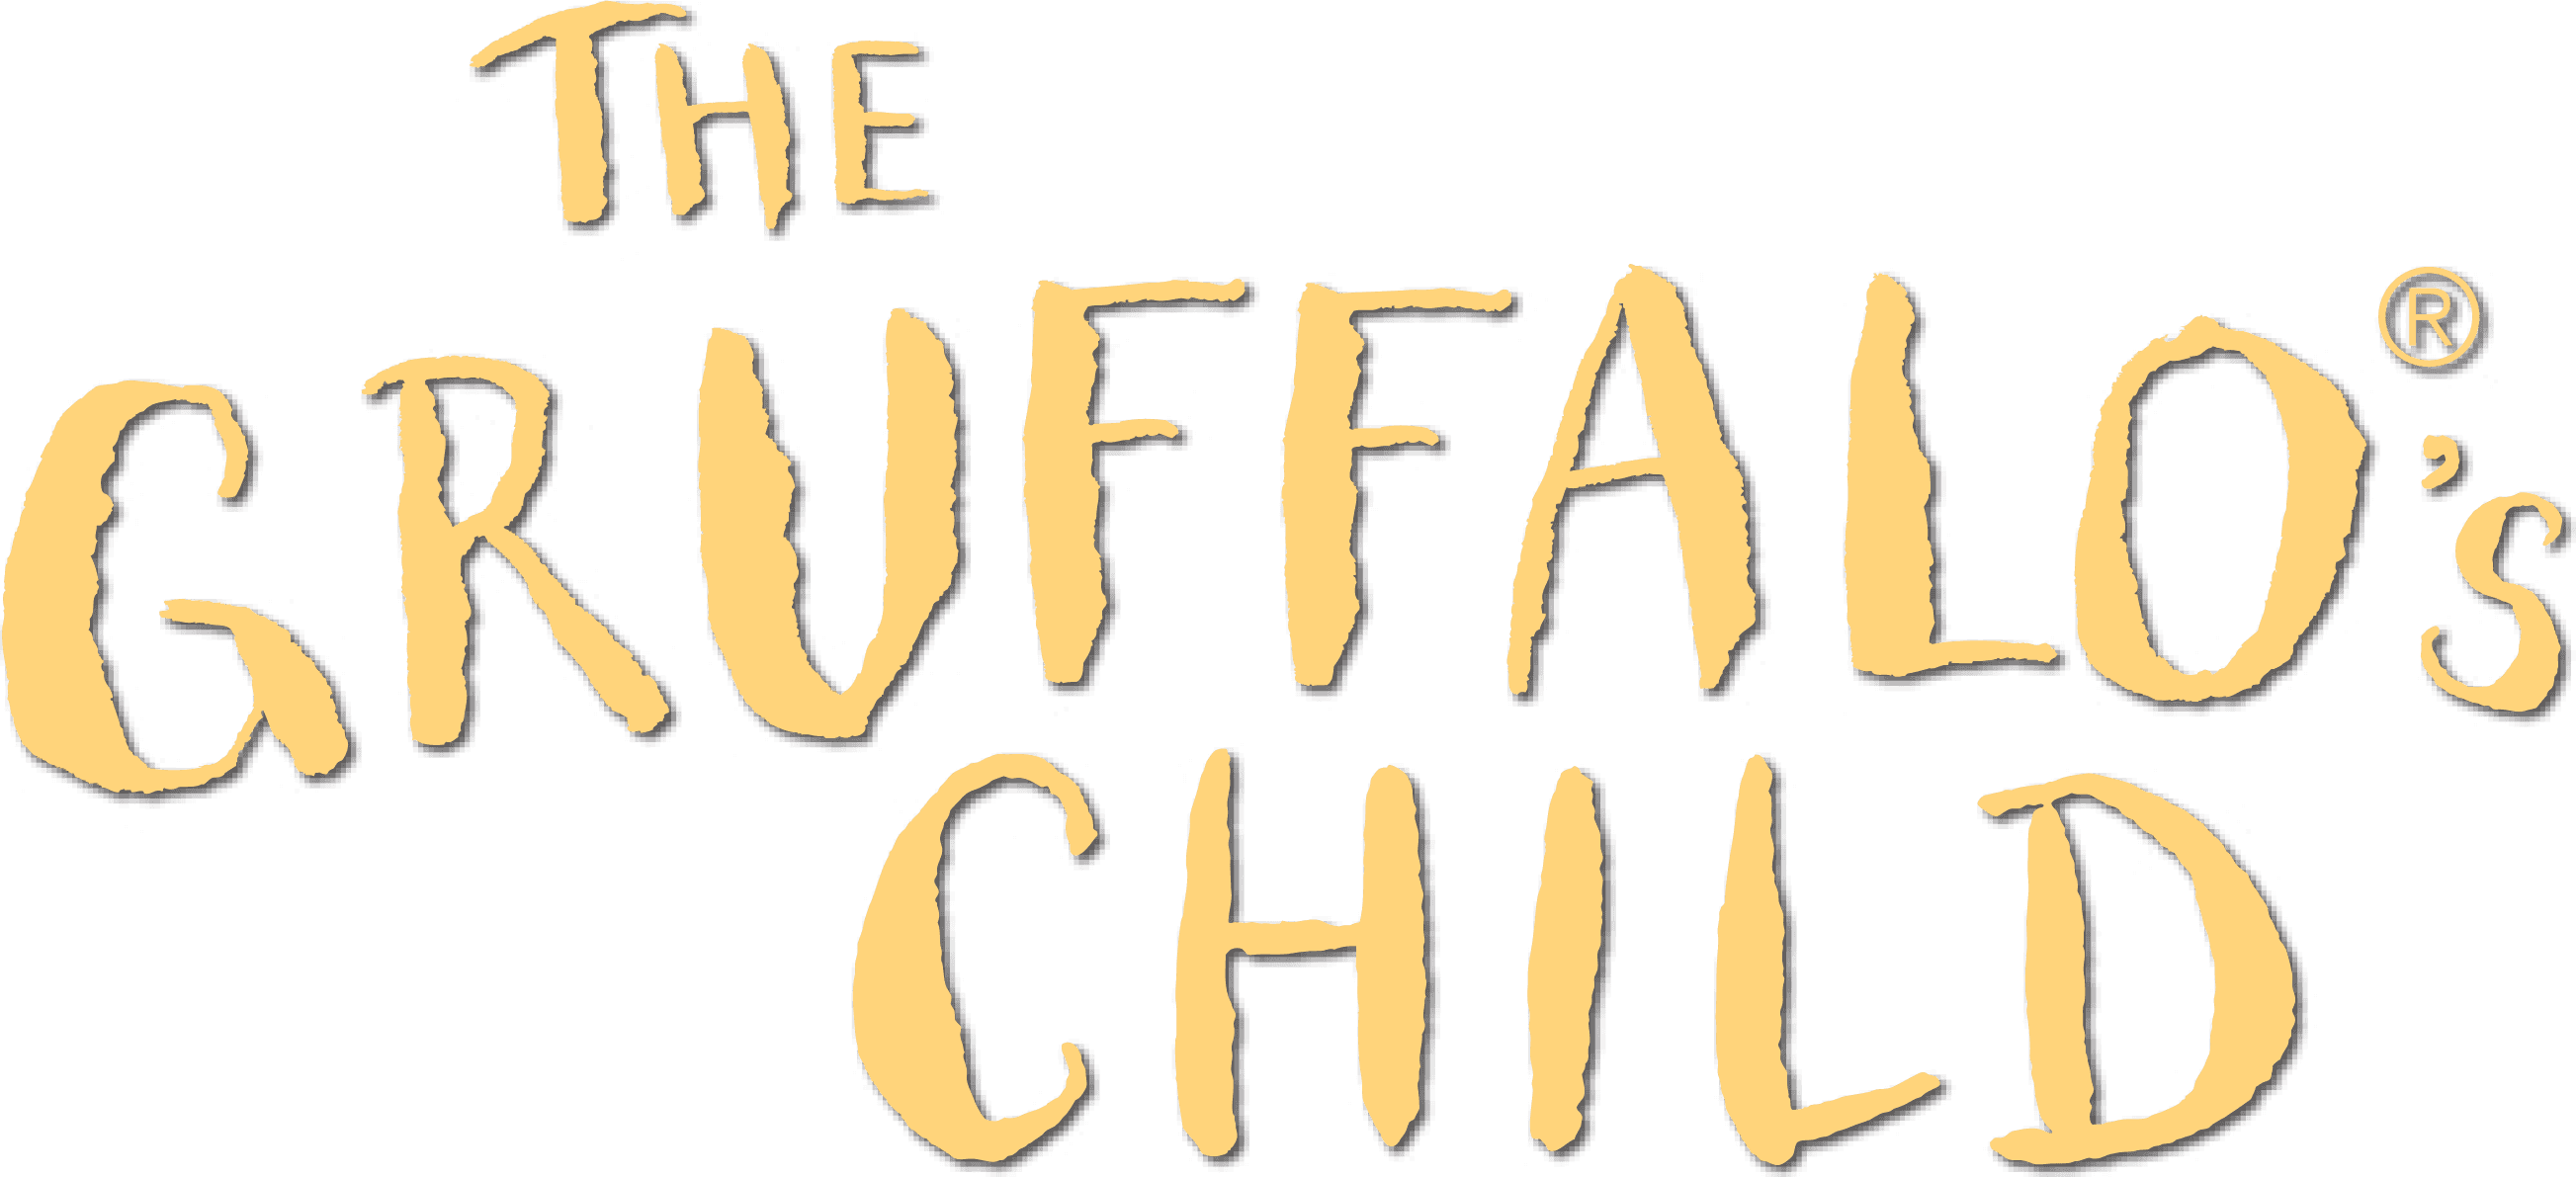 The Gruffalo's Child logo